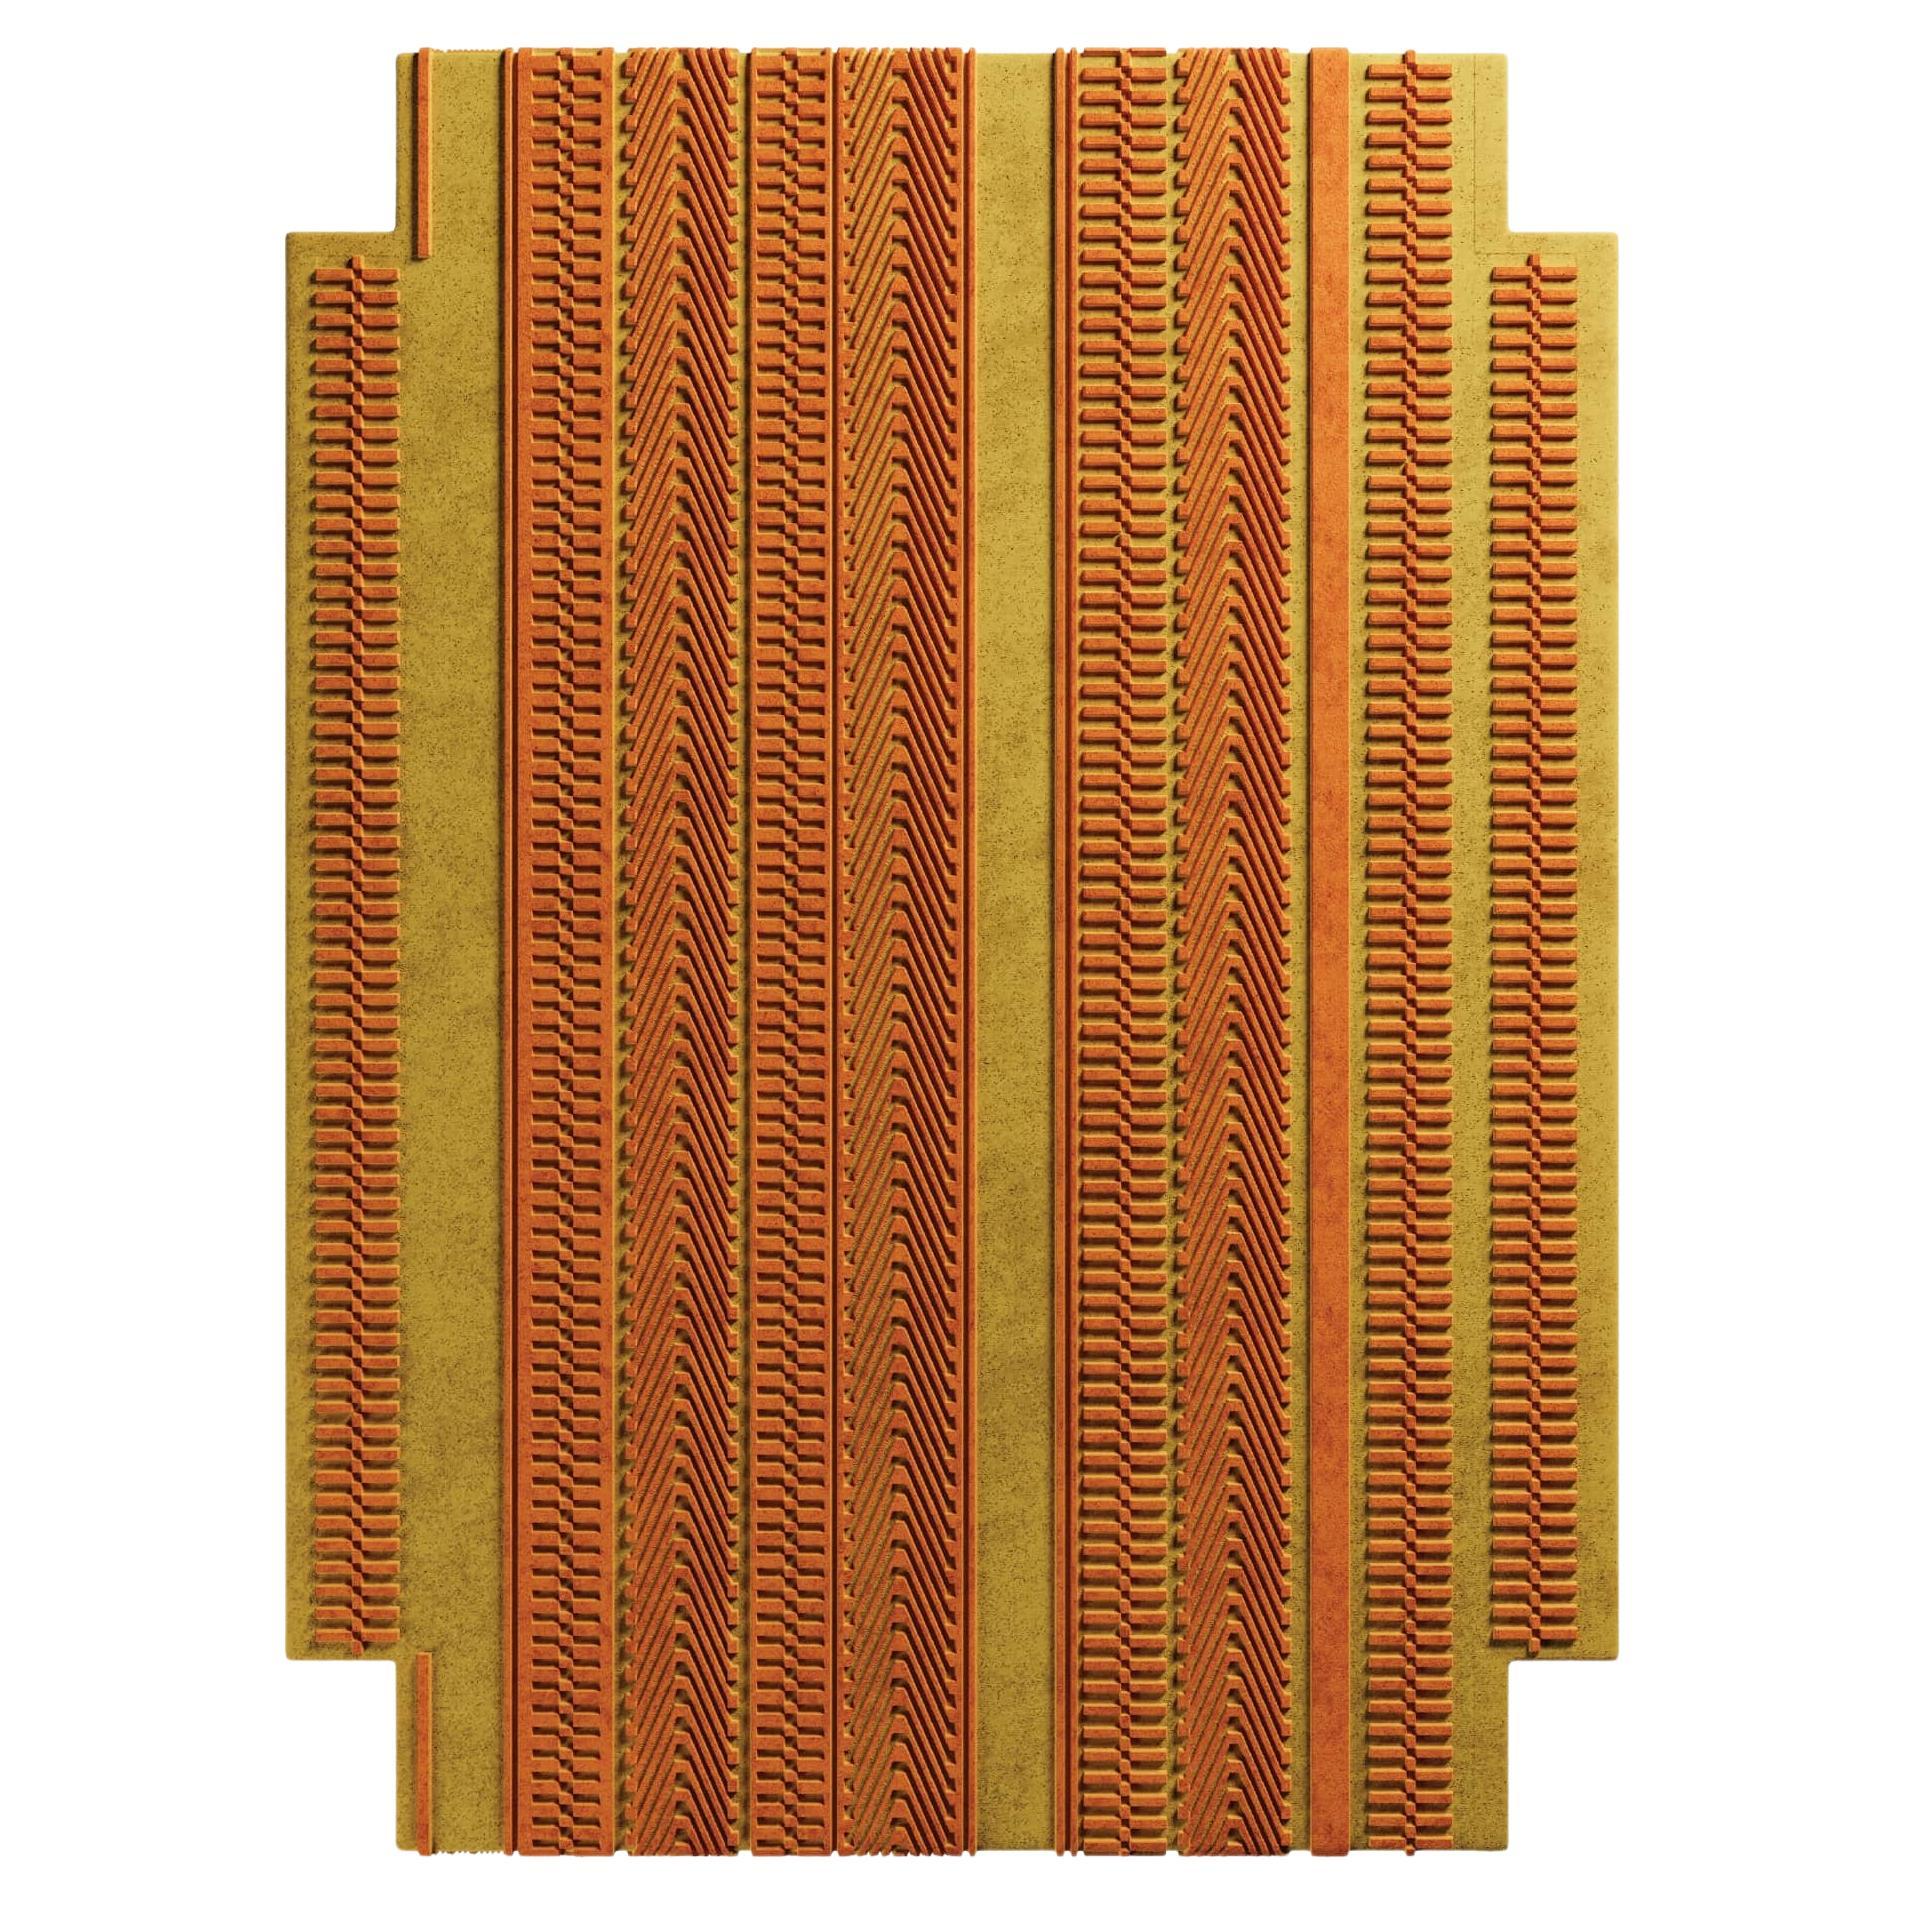 Modernes Arts & Craft Design Geometrisch geformter handgetufteter Teppich Gelb & Orange